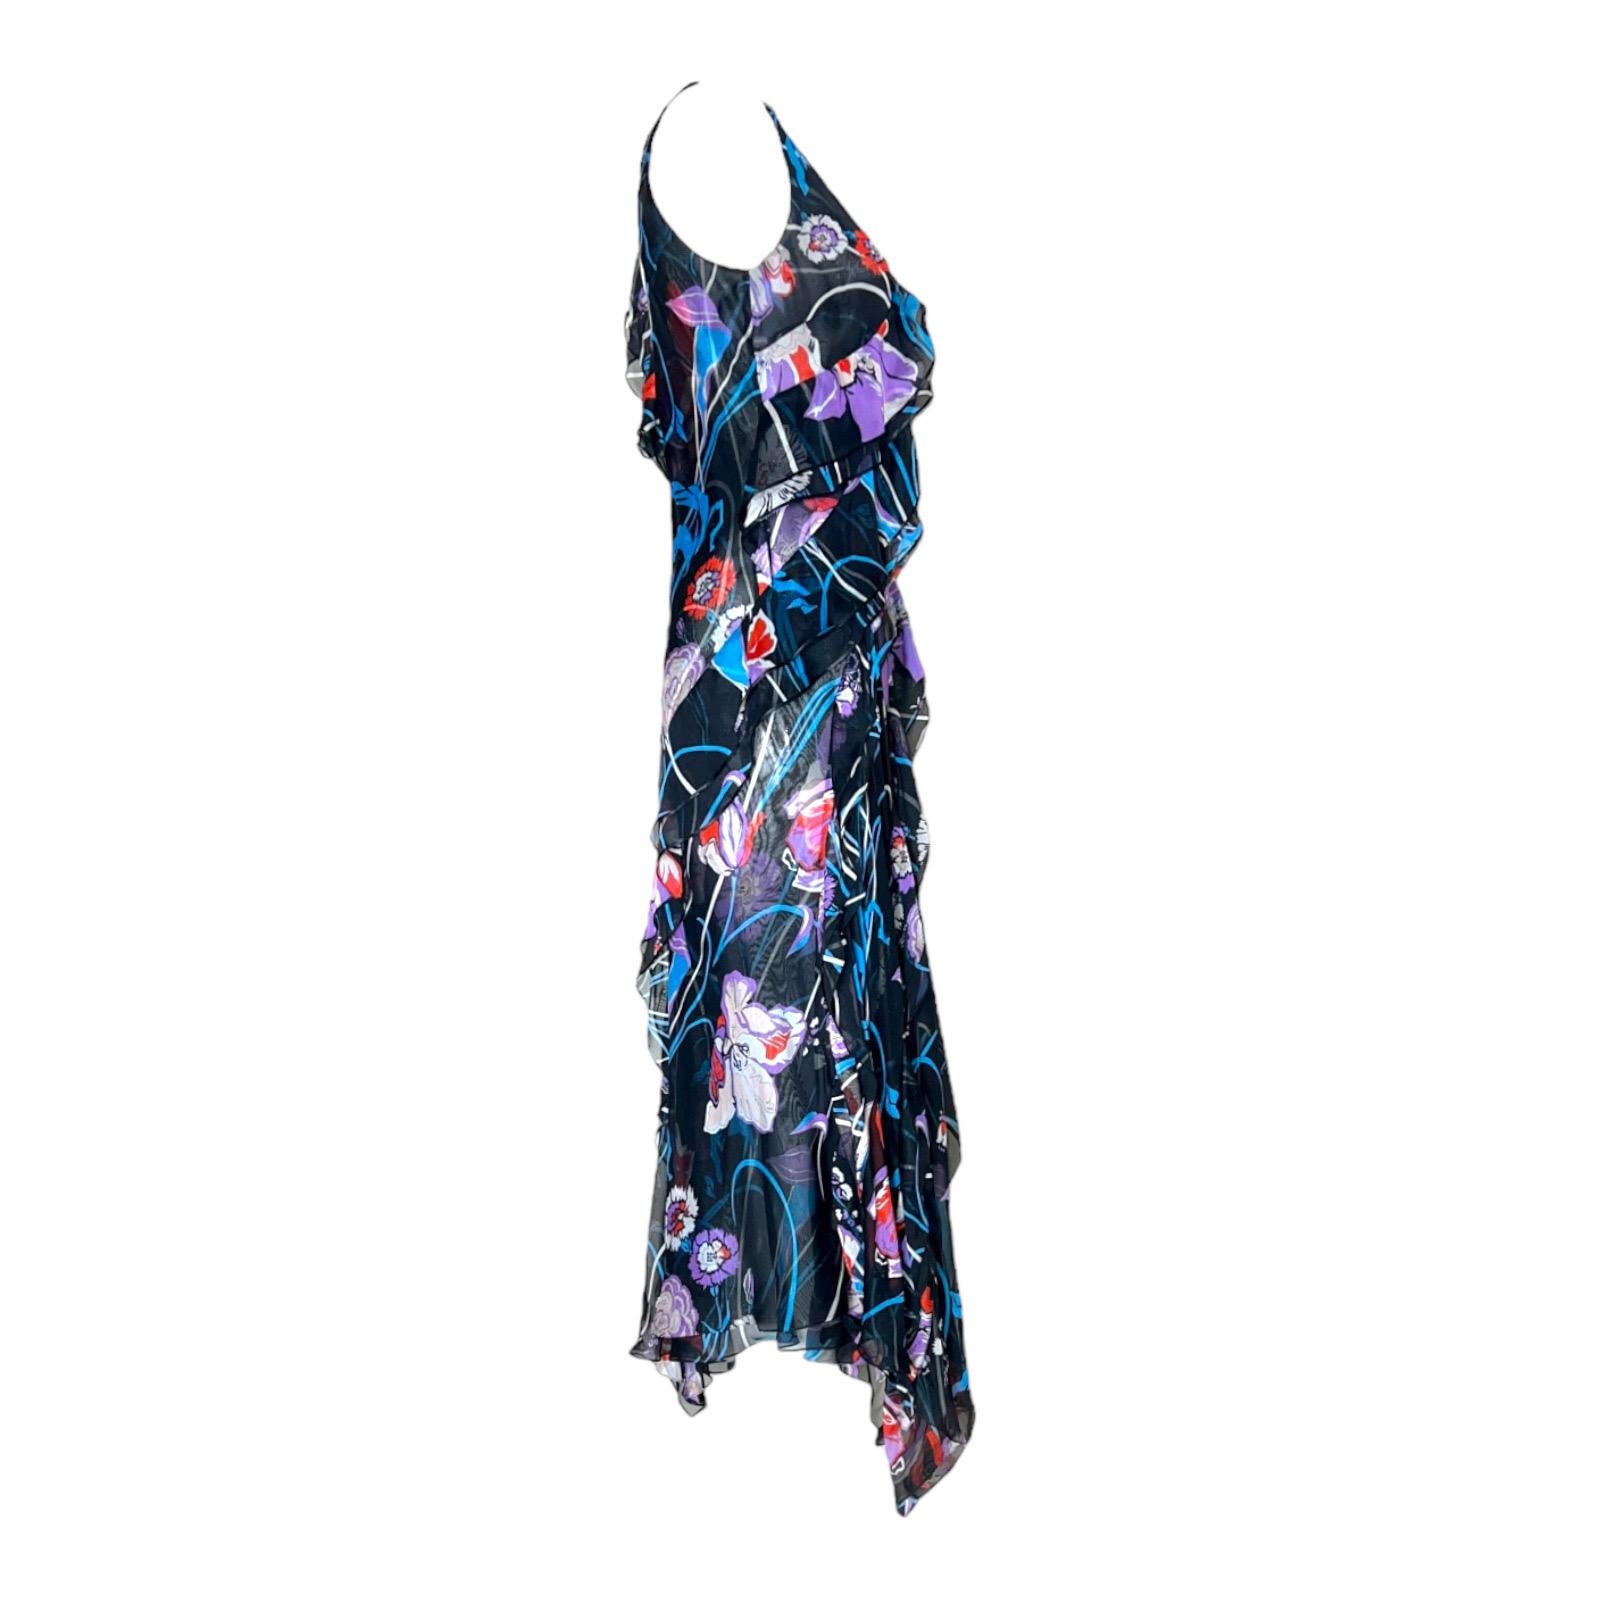 Magnifique robe en soie Emilio Pucci
Dans l'imprimé floral signature
